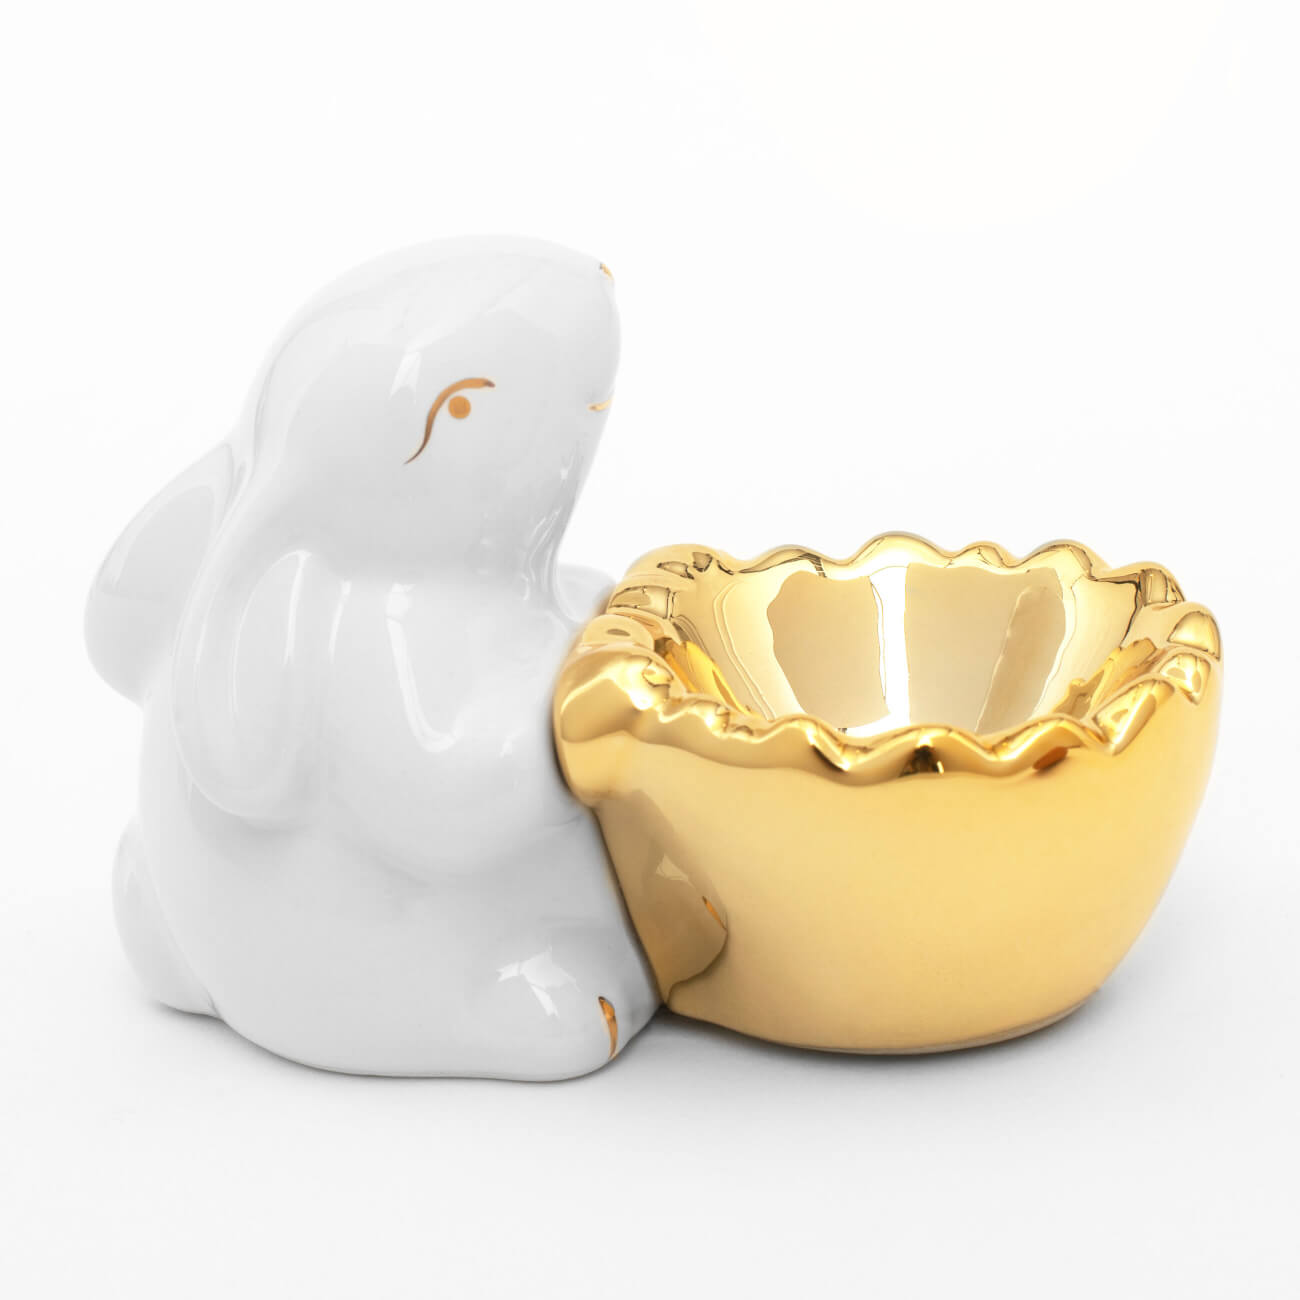 Подставка для яйца, 11 см, керамика, бело-золотистая, Кролик со скорлупой, Easter gold сувенир керамика подставка под кольца